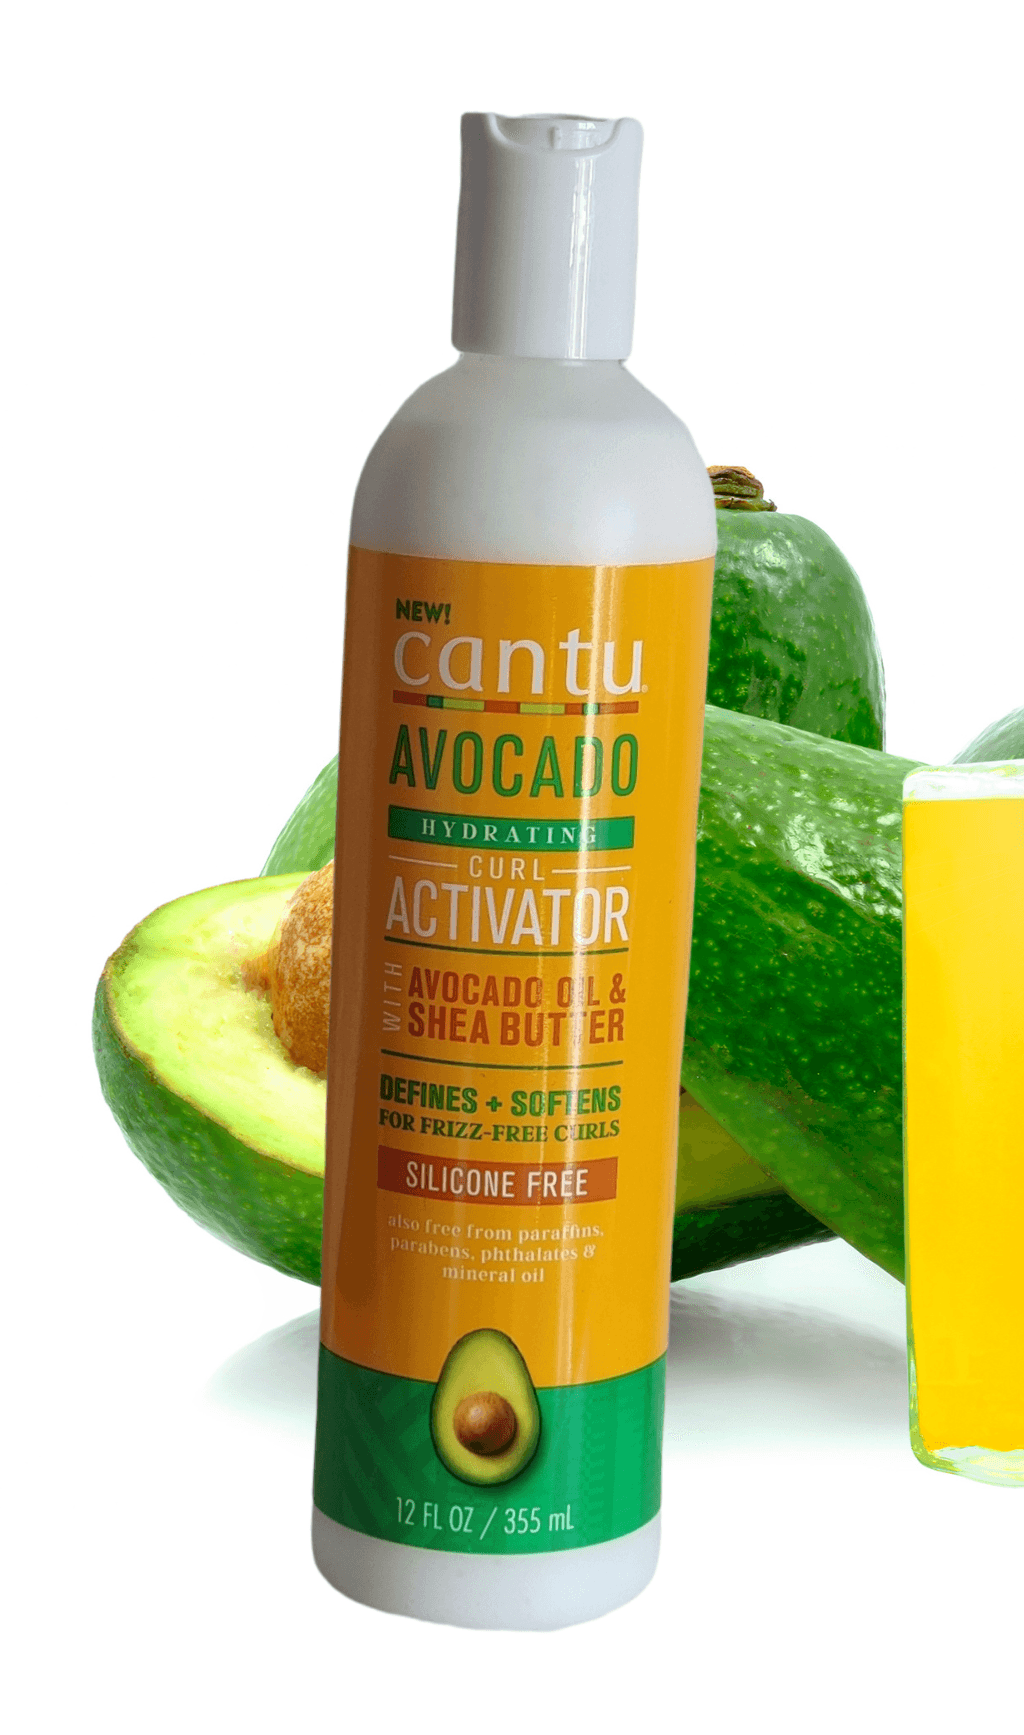 Cantu Avocado Hydrating Curl Activator - LocsNco